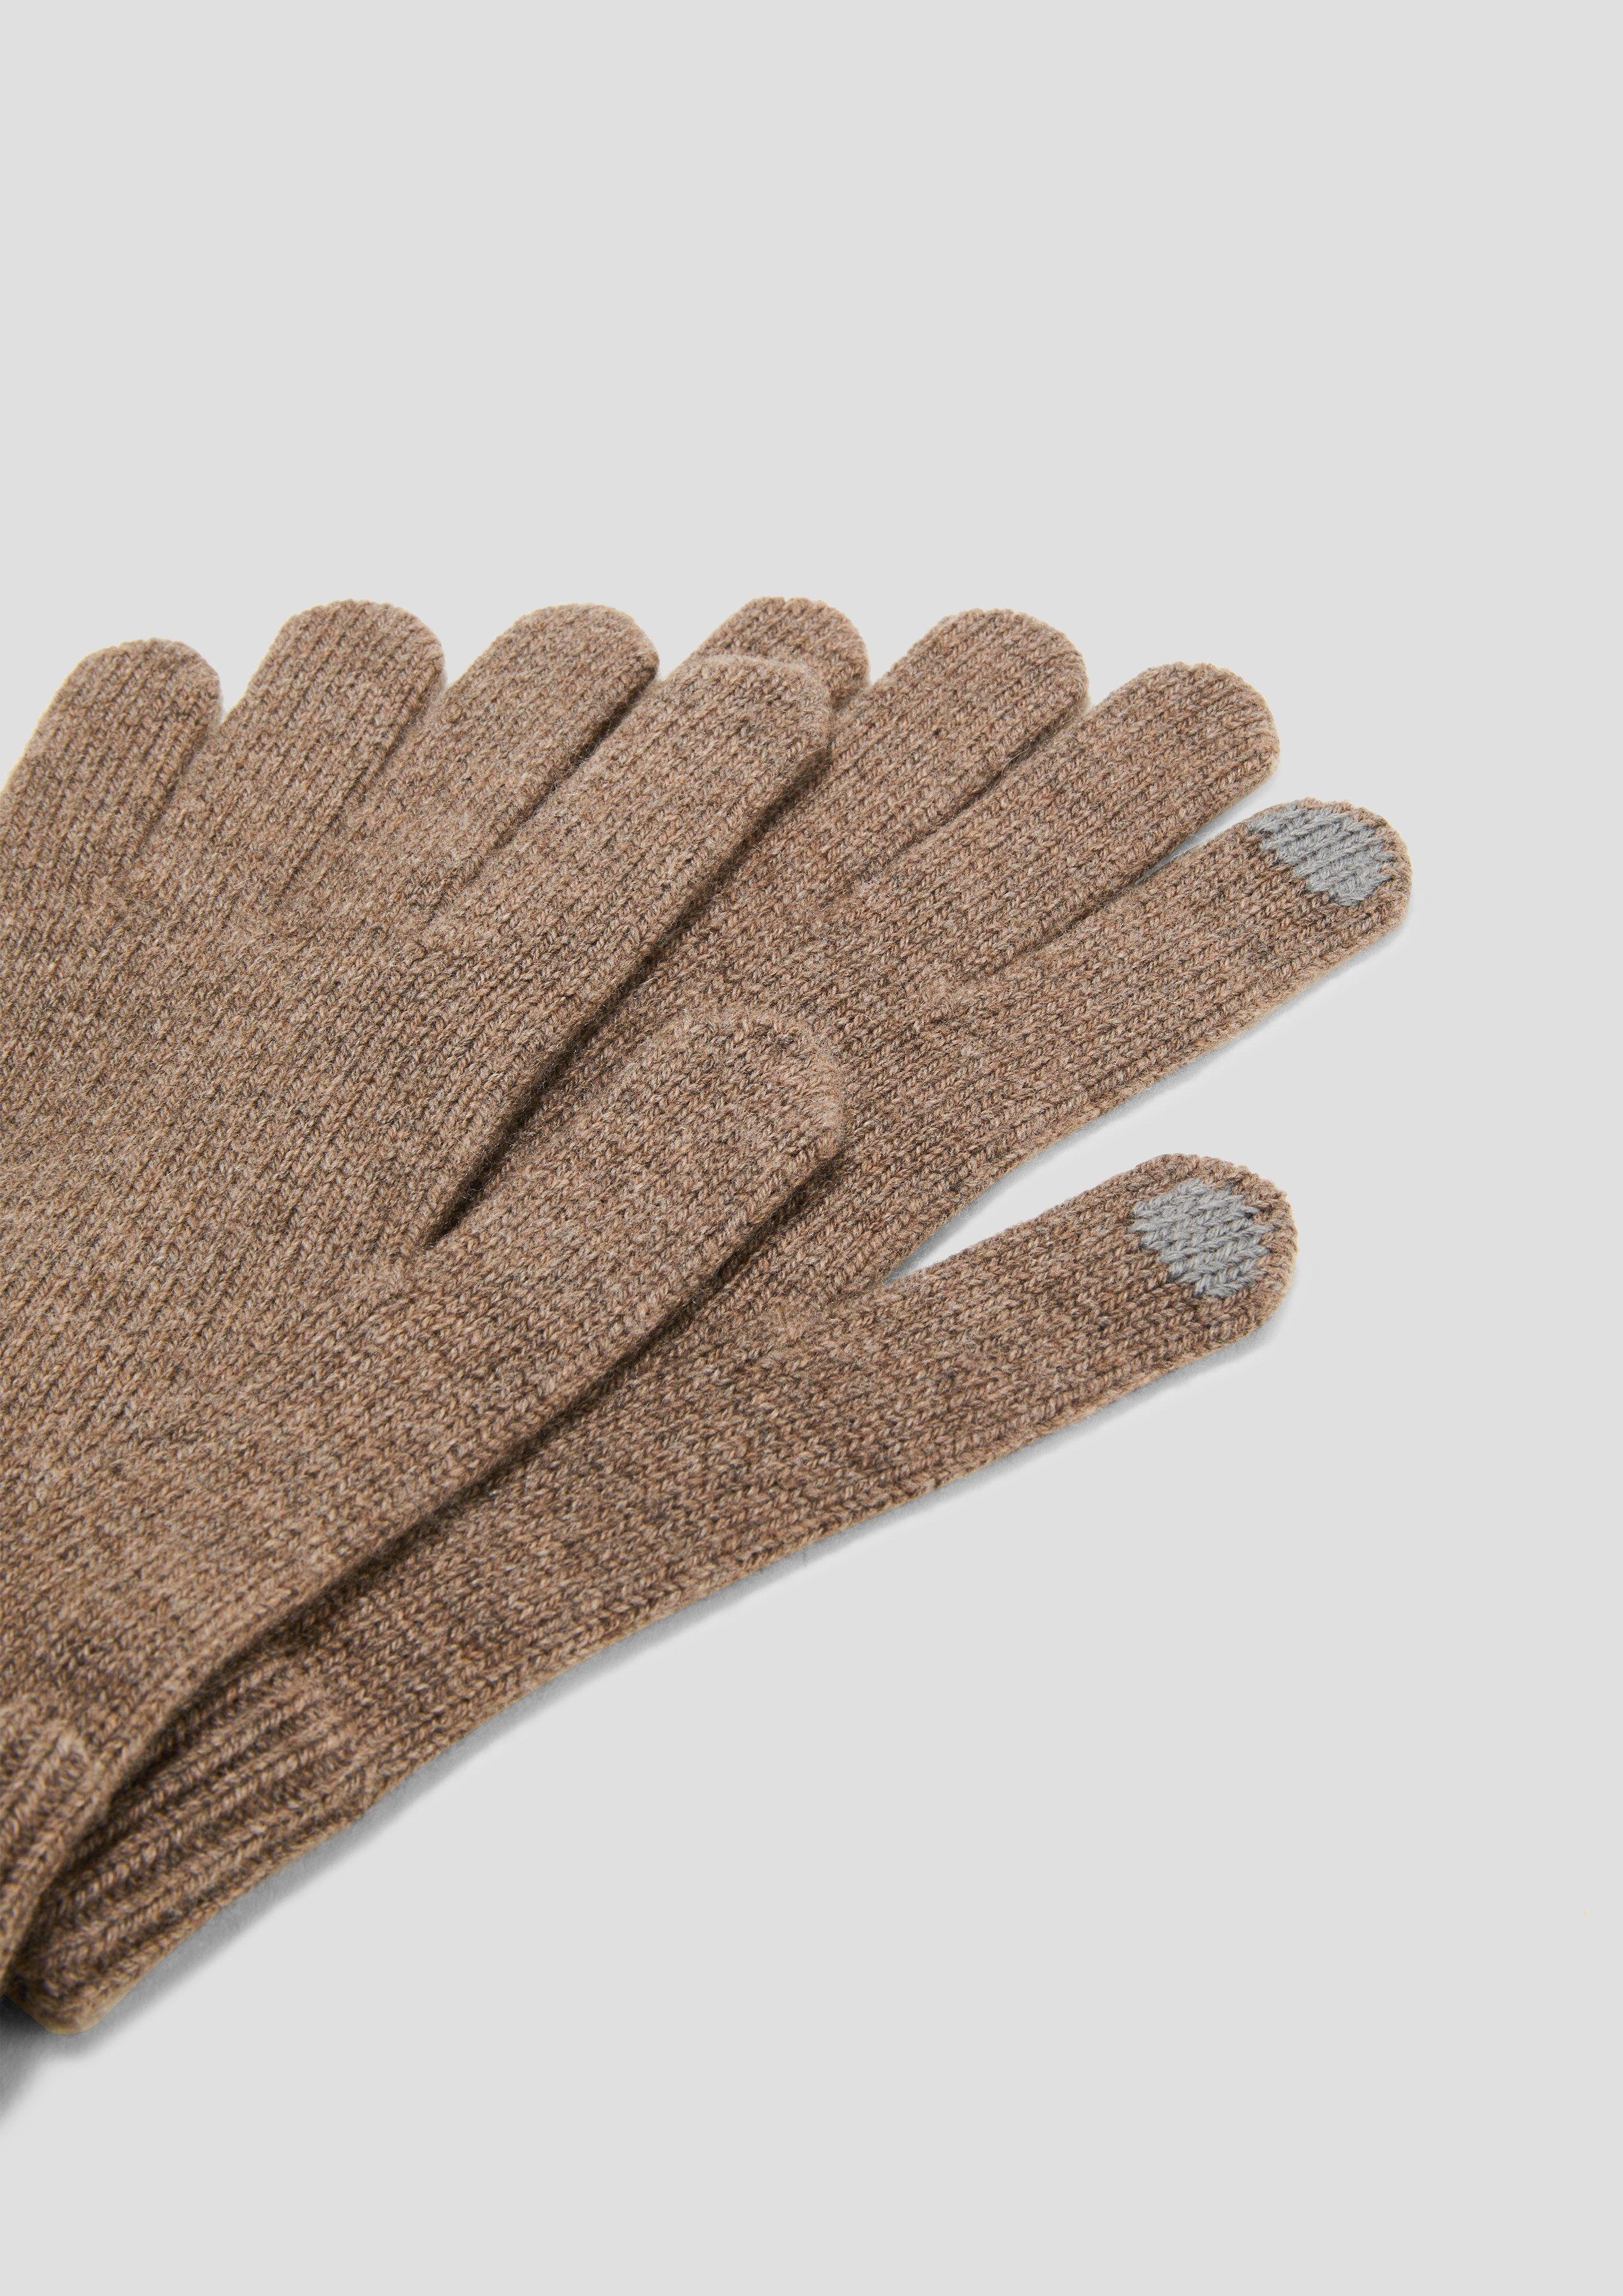 Handschuhe Woll-Kaschmir-Mix aus Strickhandschuhe s.Oliver